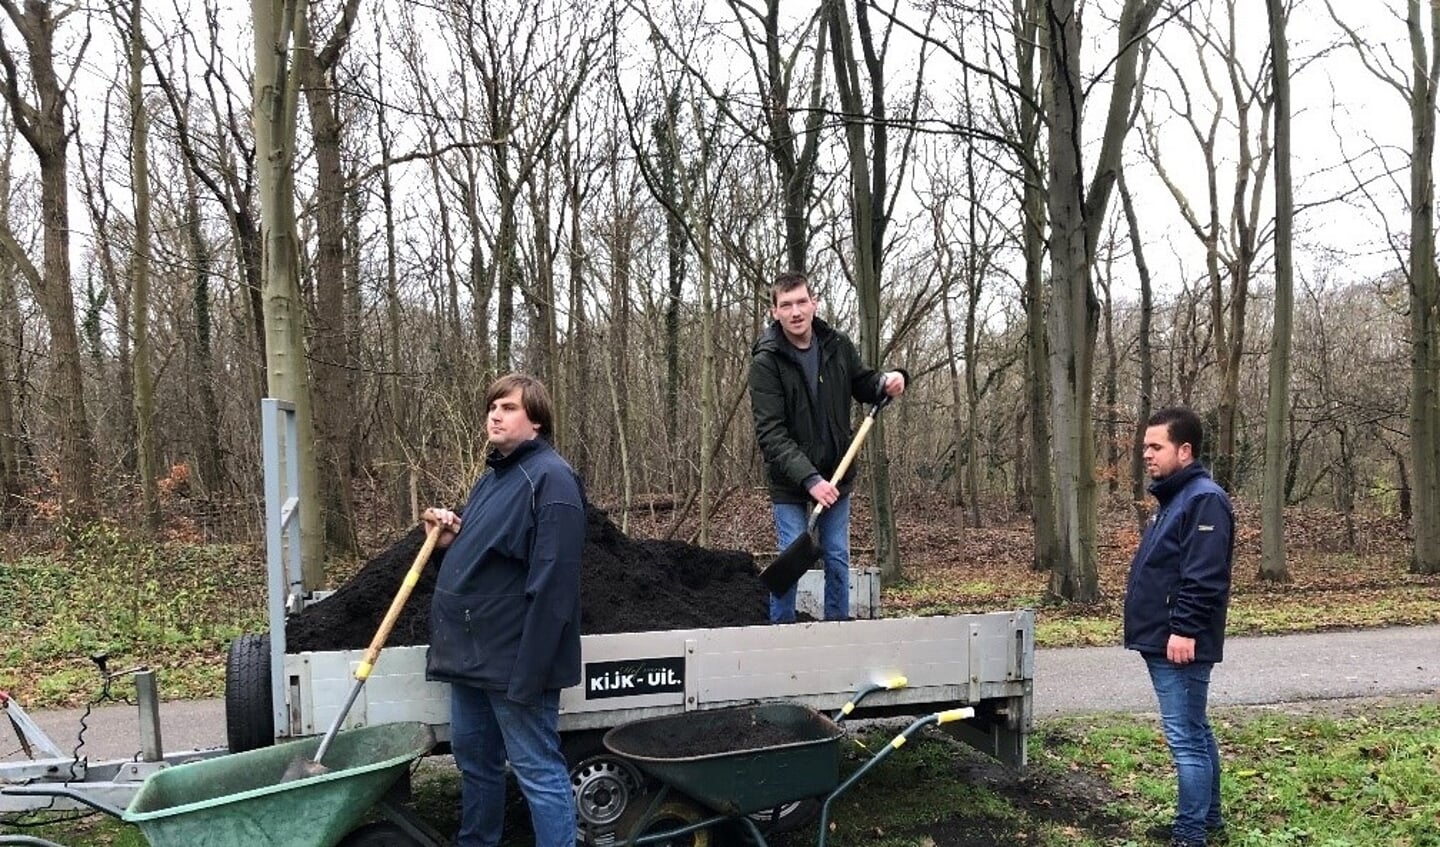 Deelnemers van Het Hof van Kijk-Uit Rik, Bram en Jan verzorgen de compost speciaal voor deze actie gesponsord door Tardy.